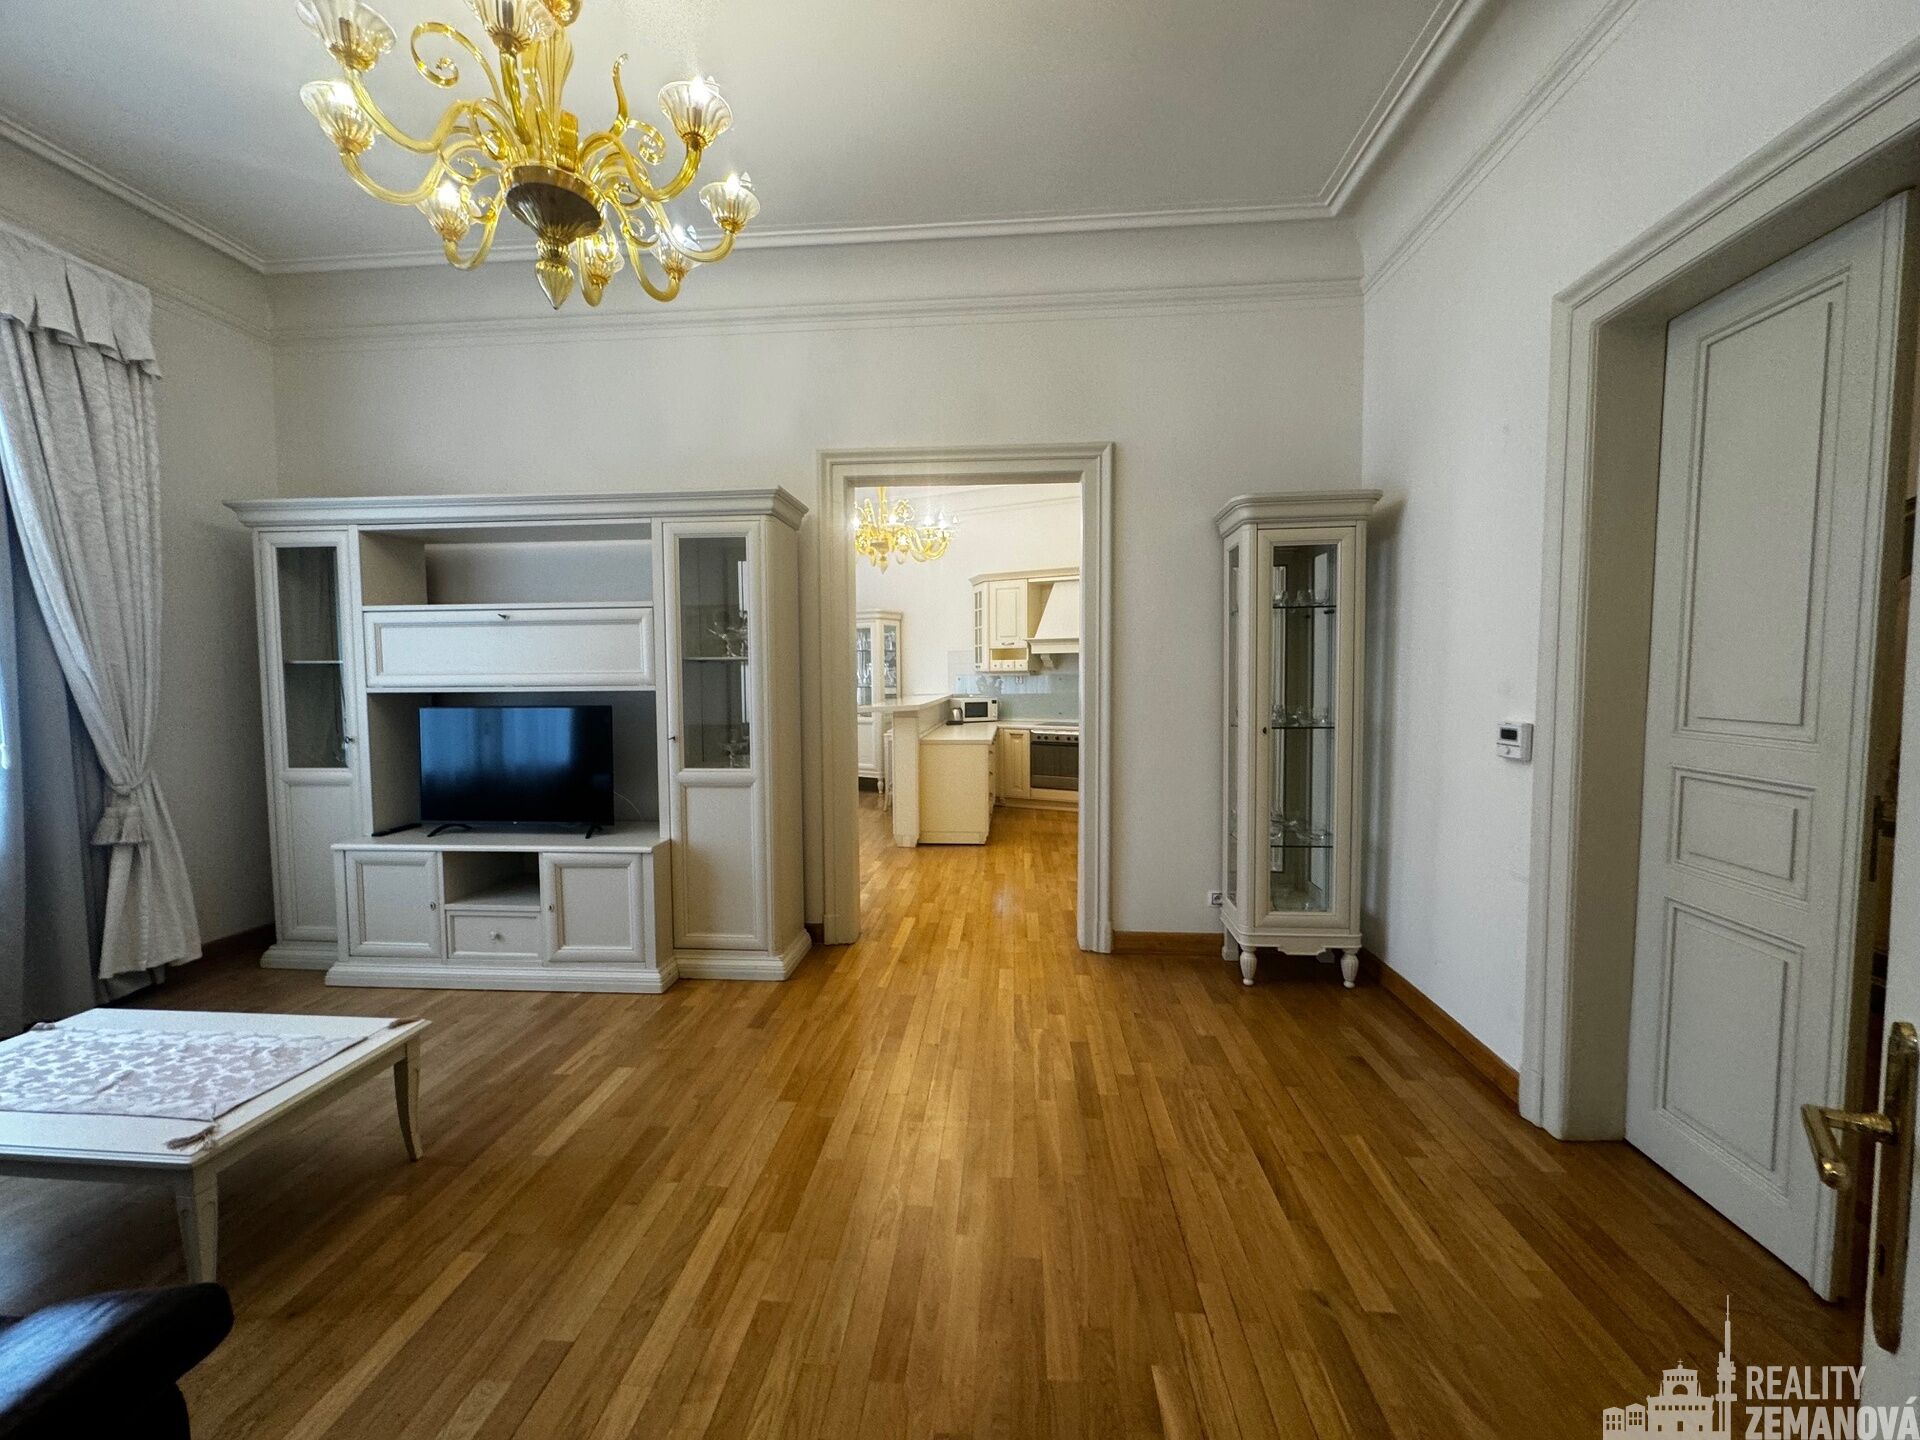 Mimořádný byt 123 m2, 4+kk, luxusně zařízený, 3.NP s výtahem, Praha 1